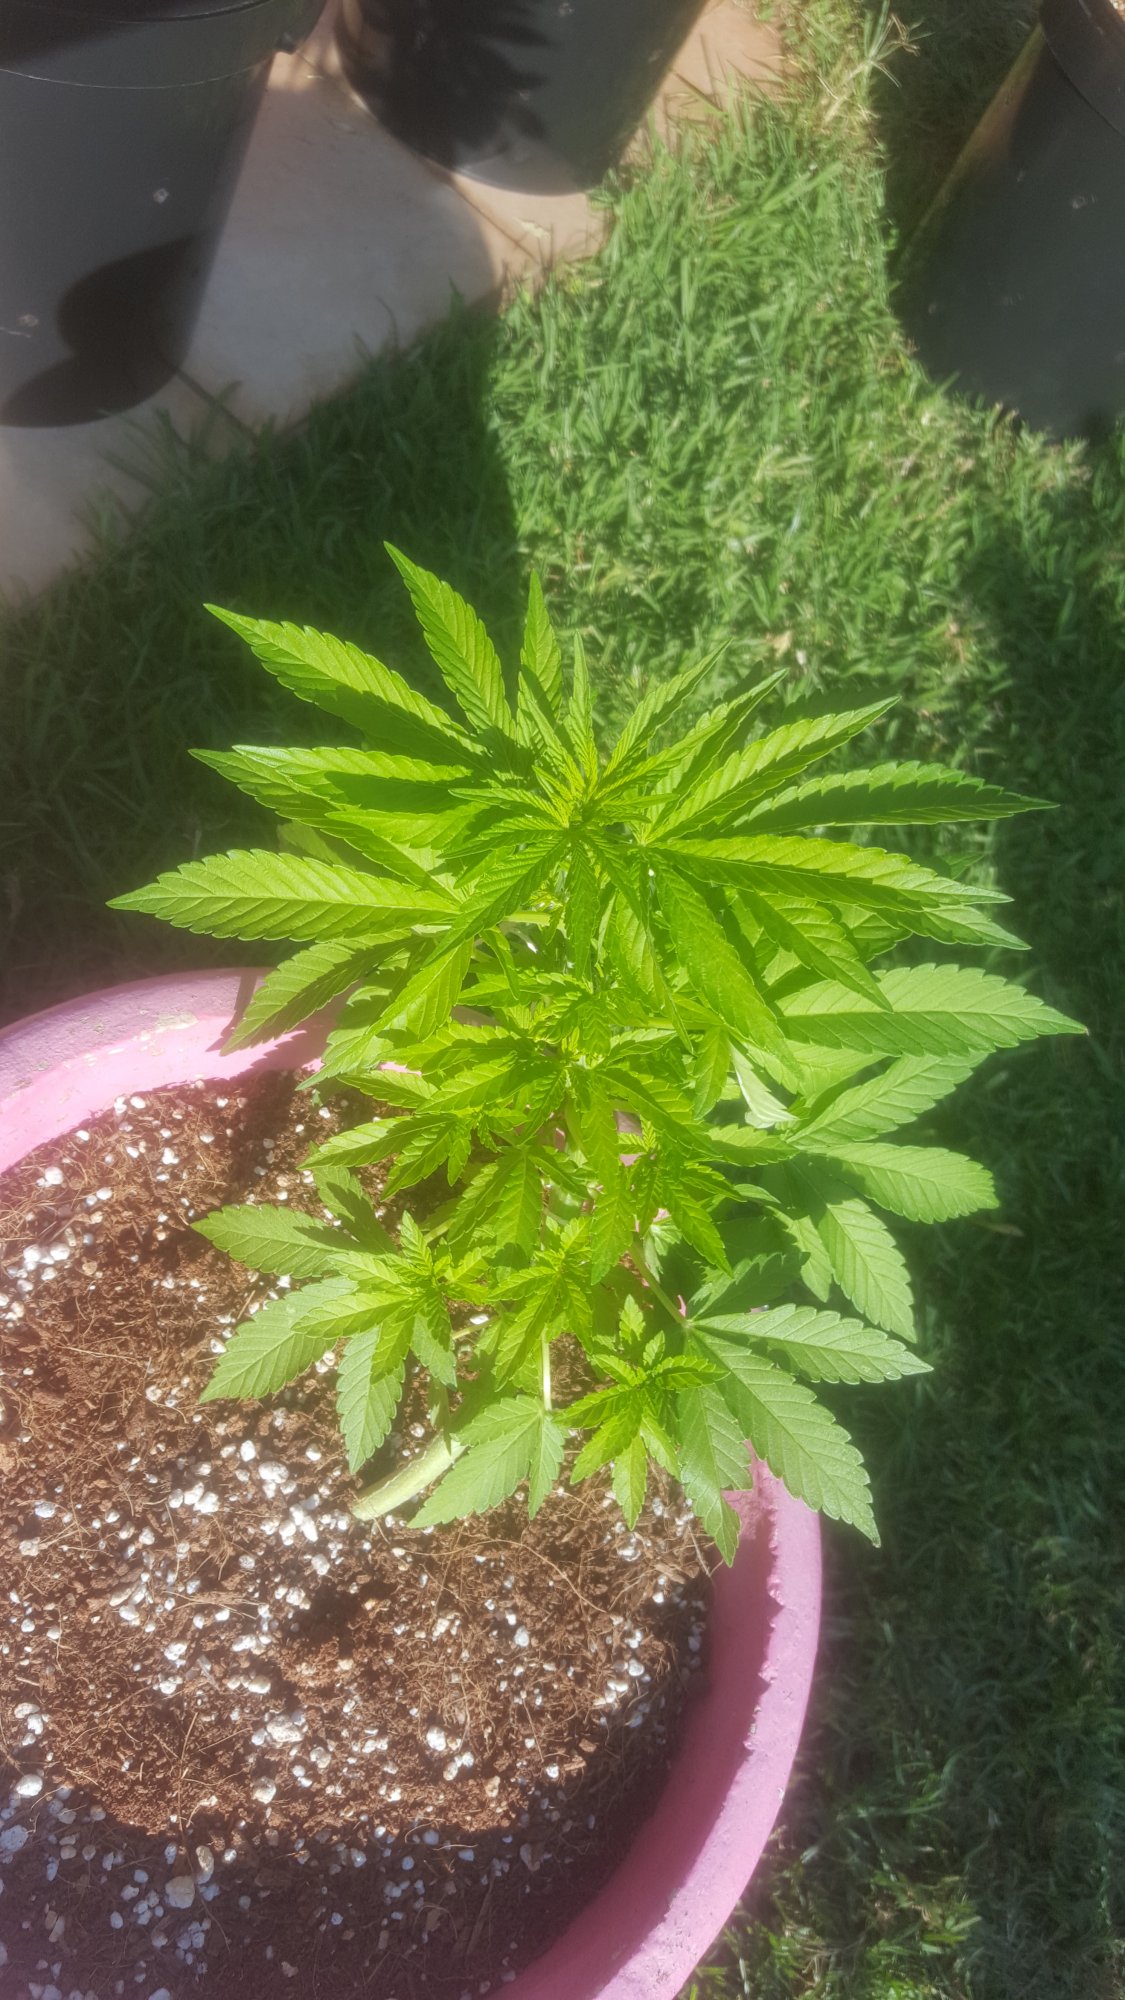 Plants at 5 weeks old 4